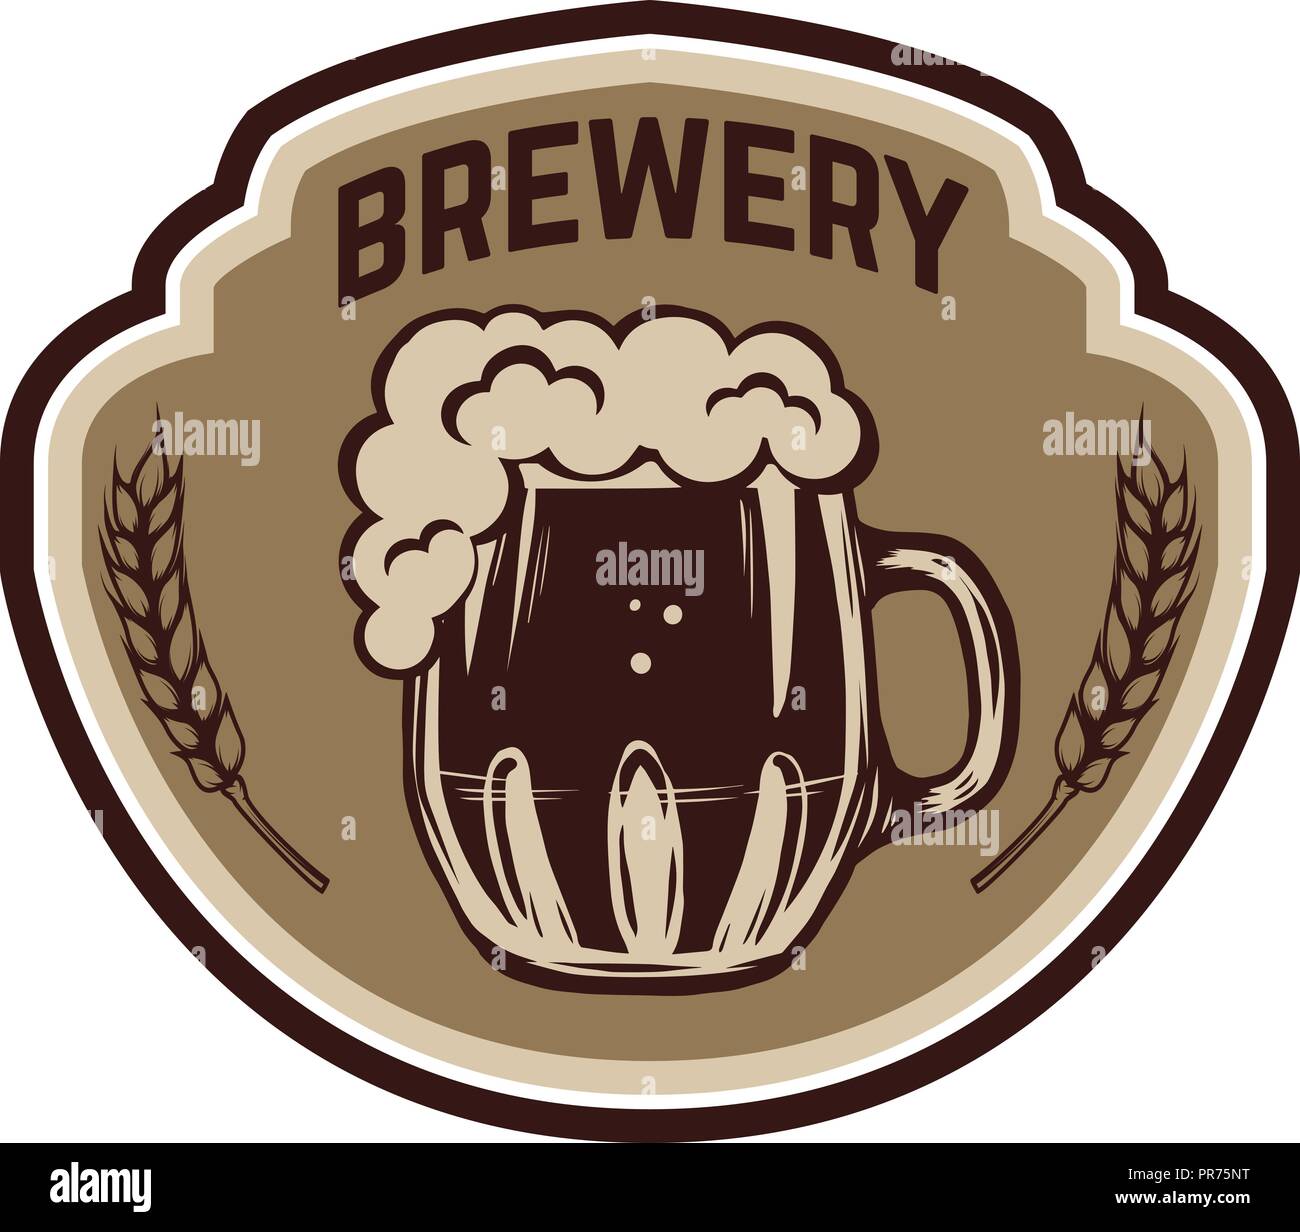 Vintage beer label. Design elements for logo, label, emblem, sign, menu ...